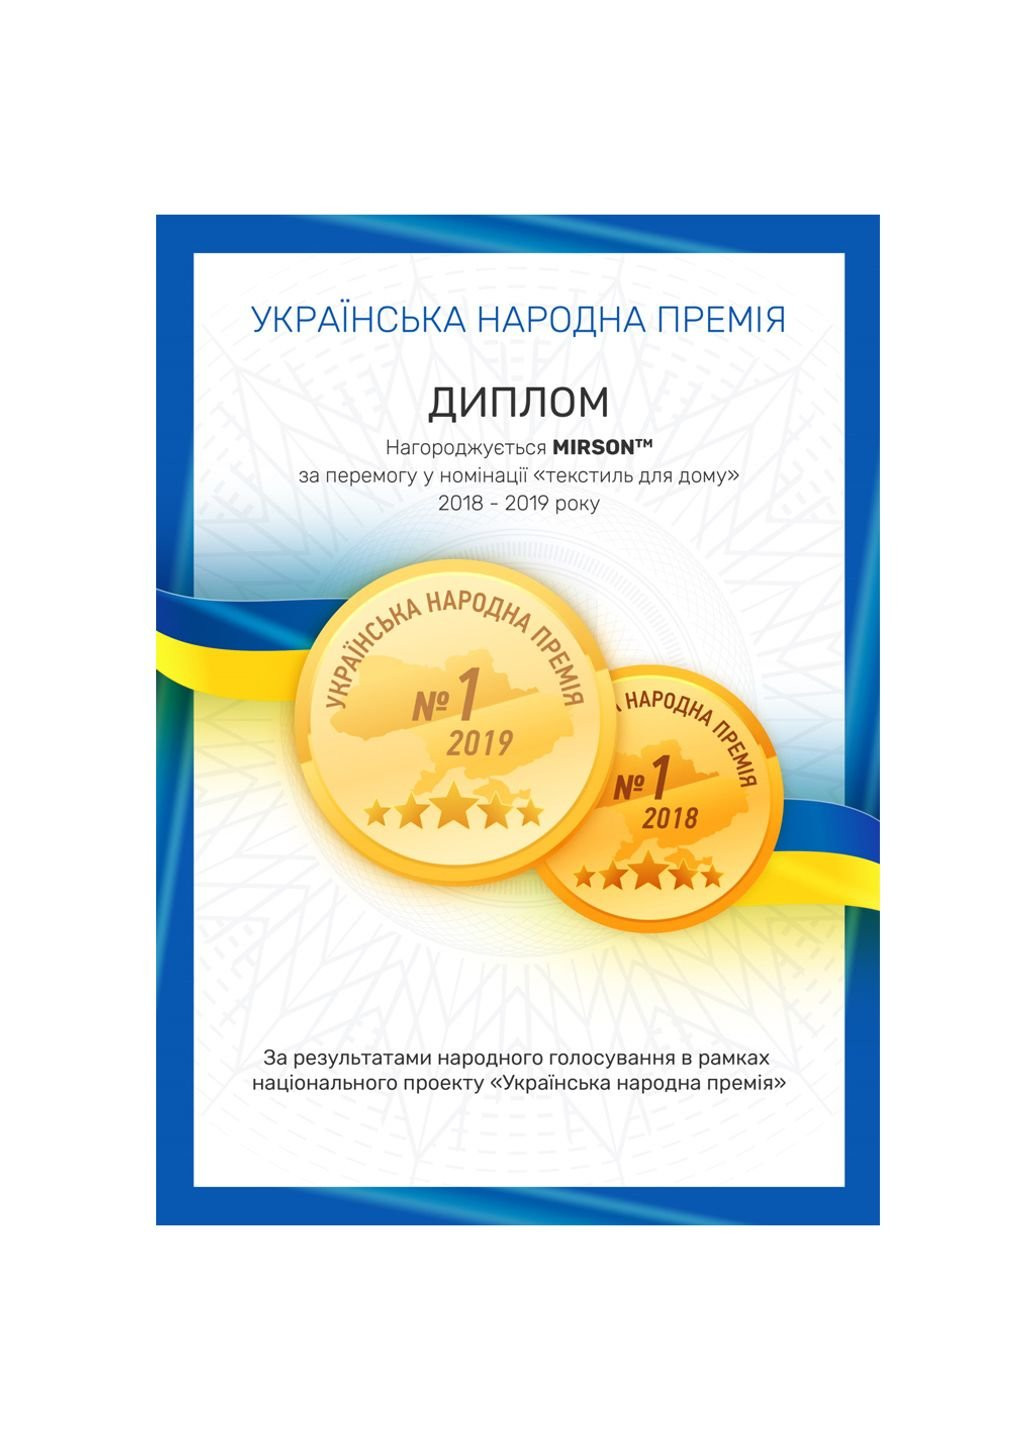 Mirson полотенце набор банный №5008 softness menthol 50x90, 70x140, 100x150 (2200003182682) мятный производство - Украина